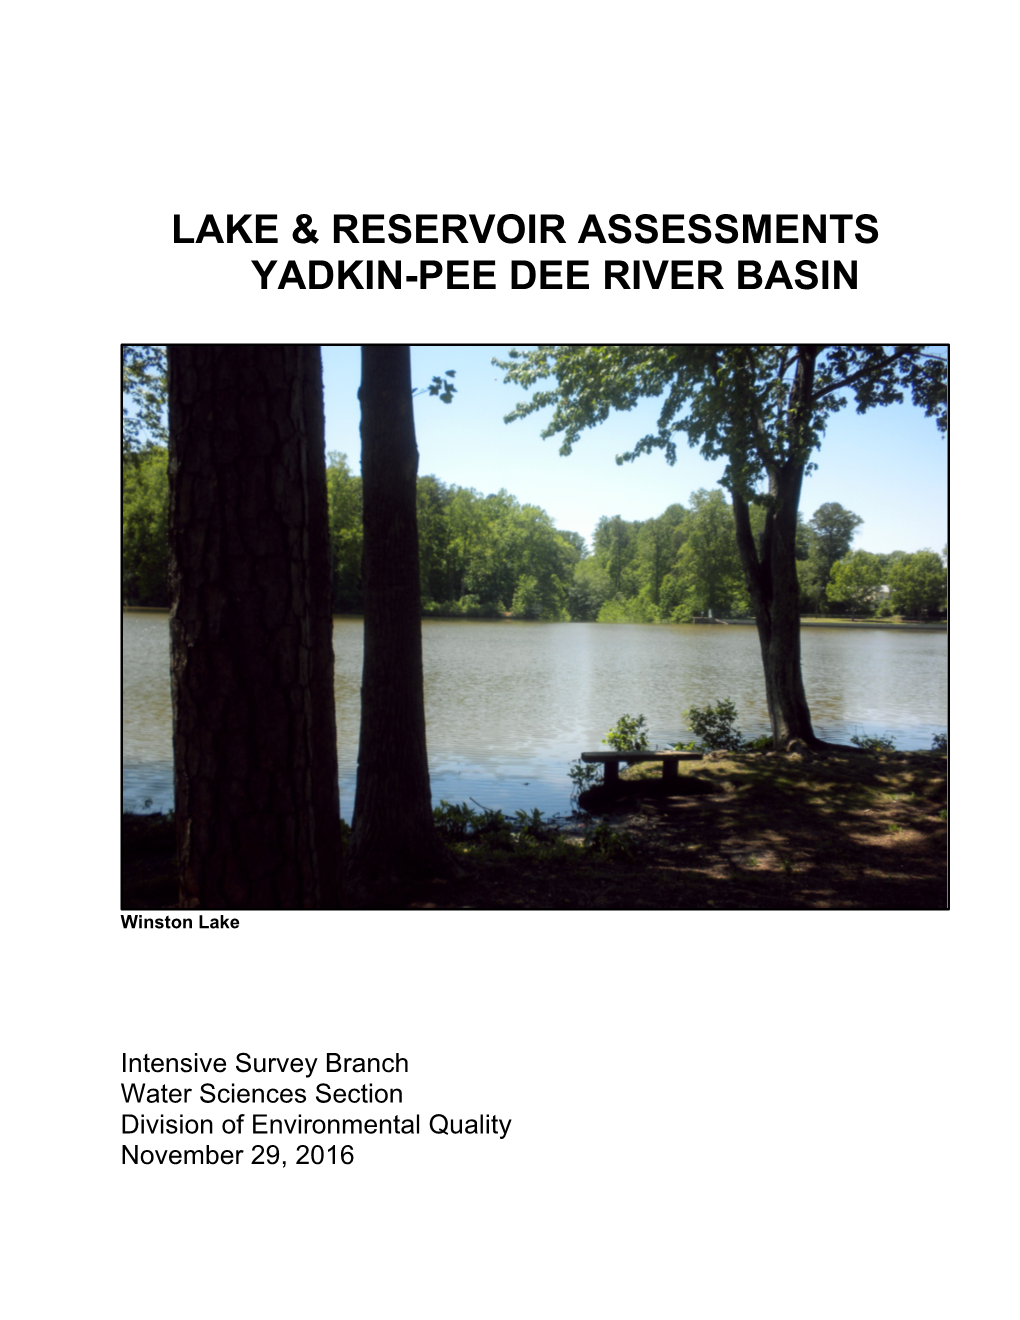 Lake & Reservoir Assessments Yadkin-Pee Dee River Basin